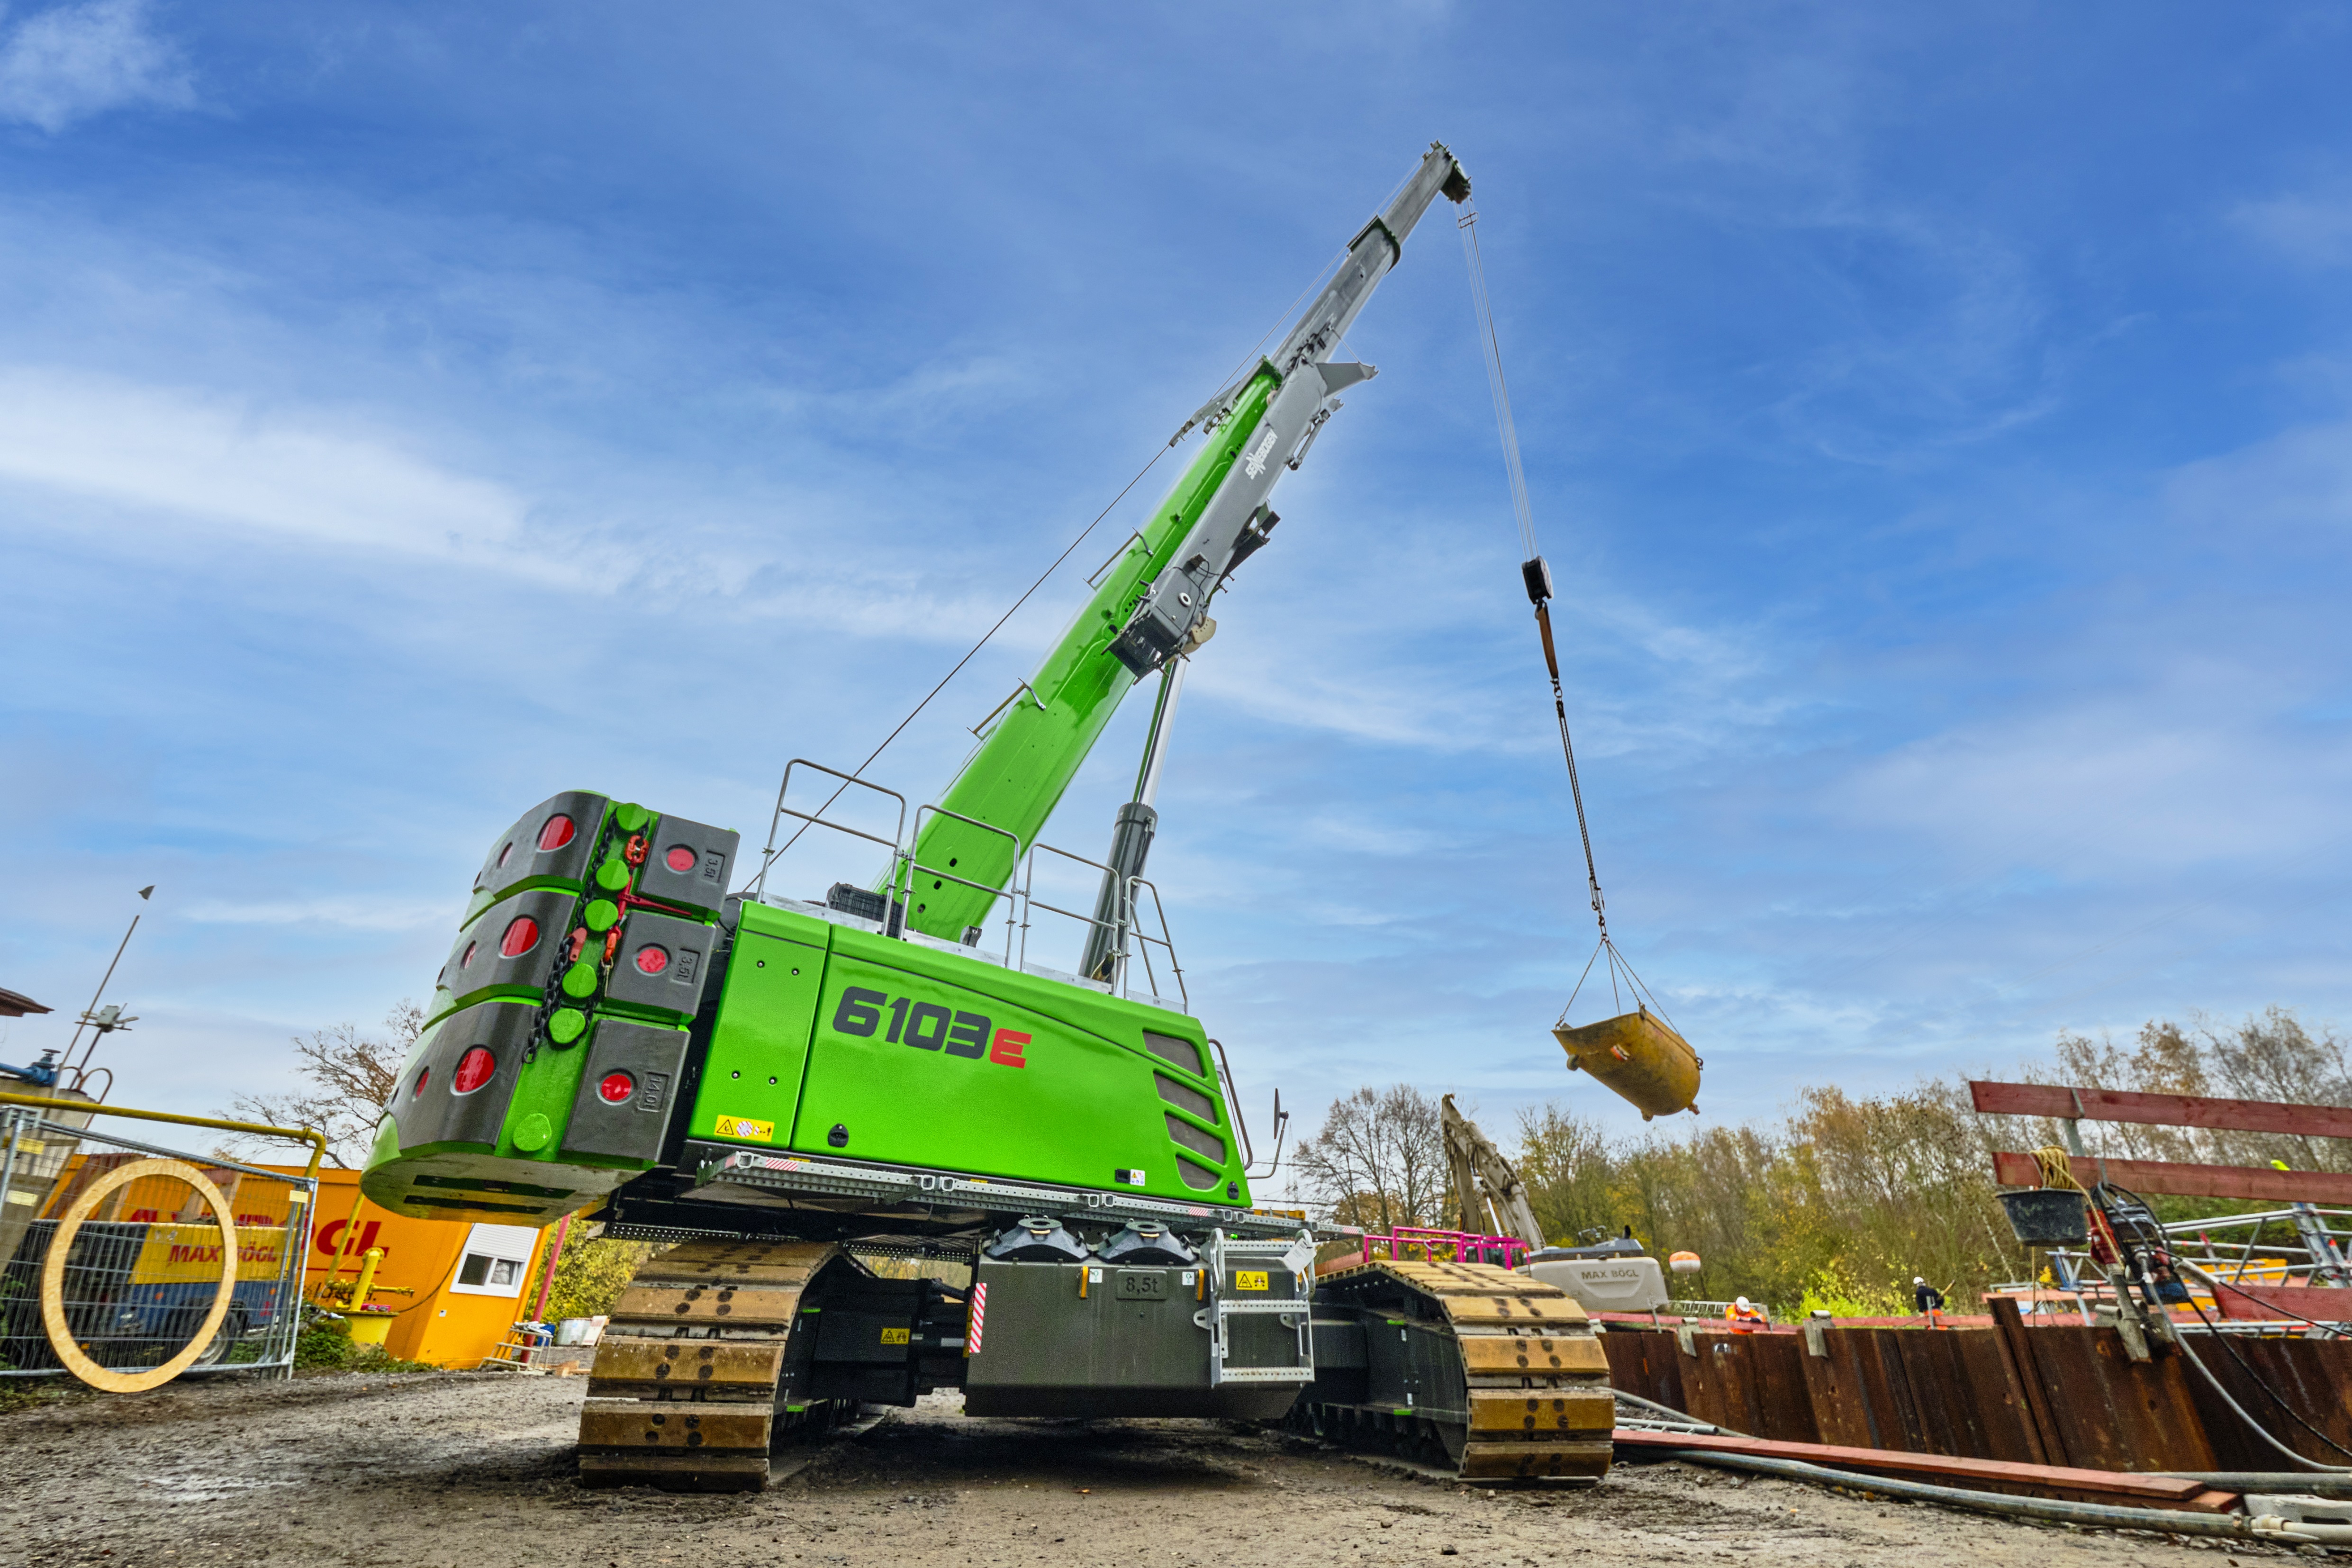 Suppliers of Sennebogen Mobile Crane Rental